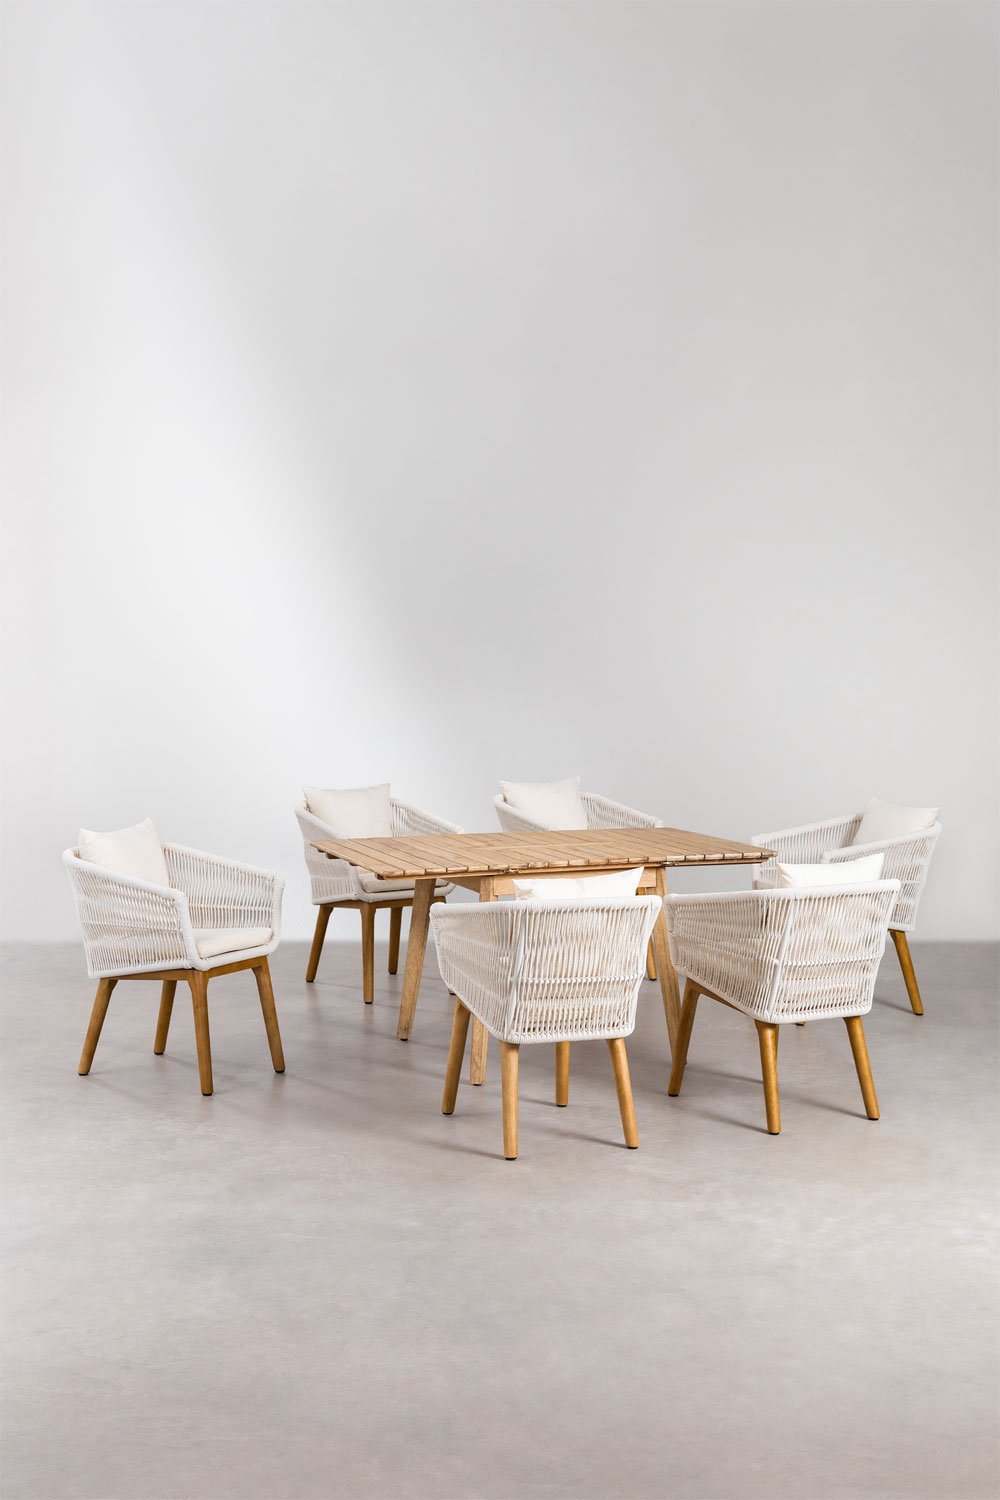 Drewniany stół rozkładany (90-150x90 cm) Naele i 6 krzeseł ogrodowych Barker, obrazek w galerii 1